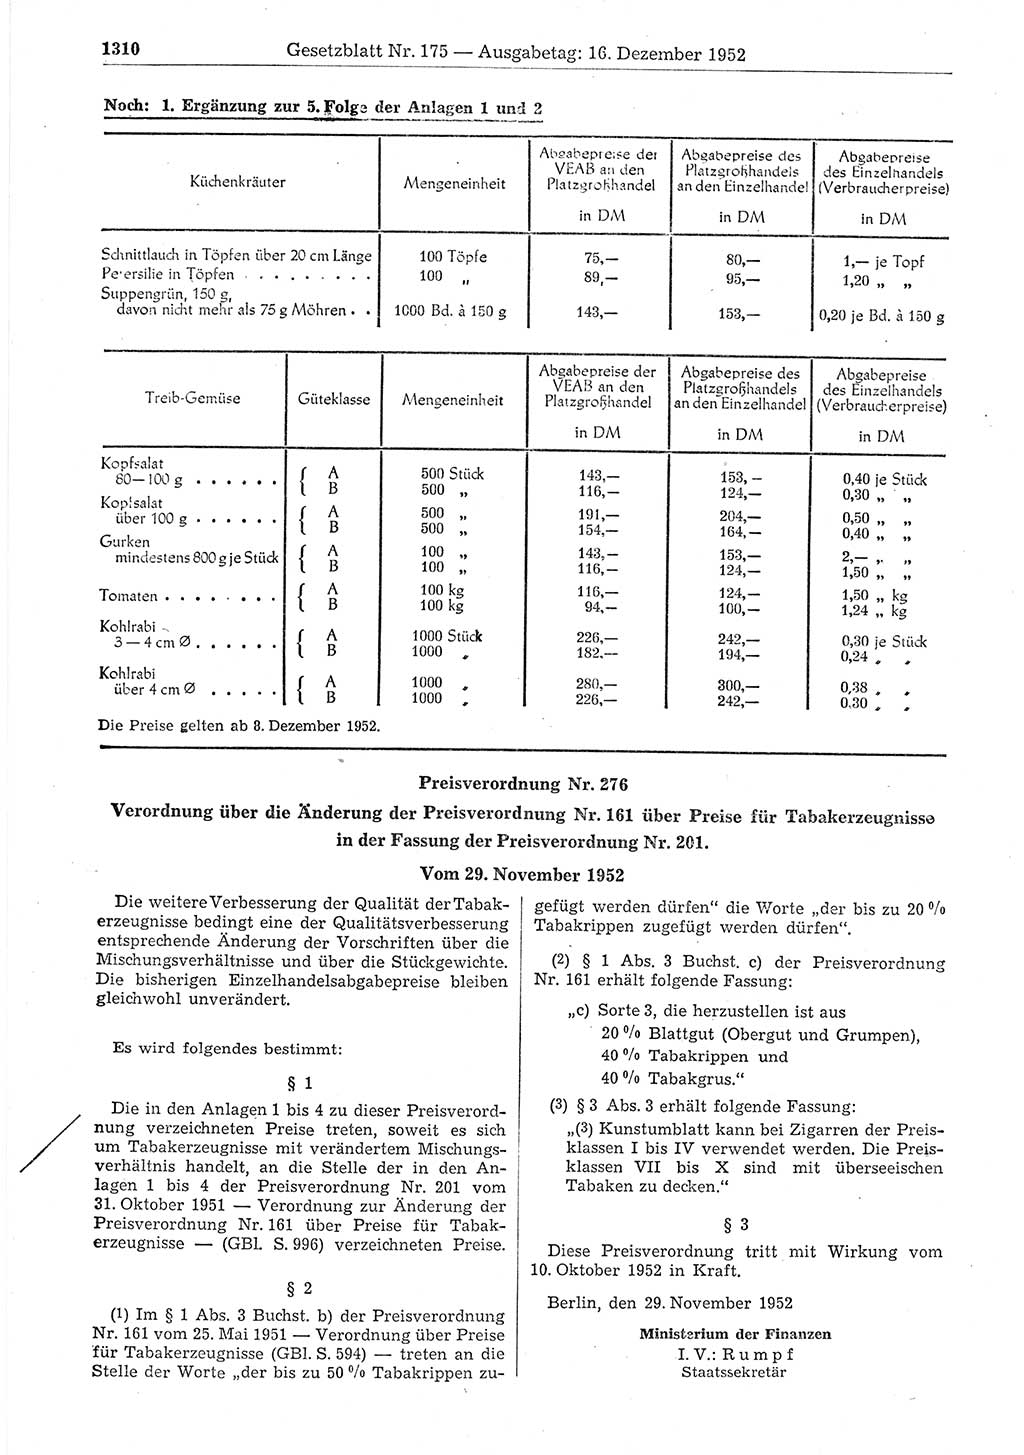 Gesetzblatt (GBl.) der Deutschen Demokratischen Republik (DDR) 1952, Seite 1310 (GBl. DDR 1952, S. 1310)